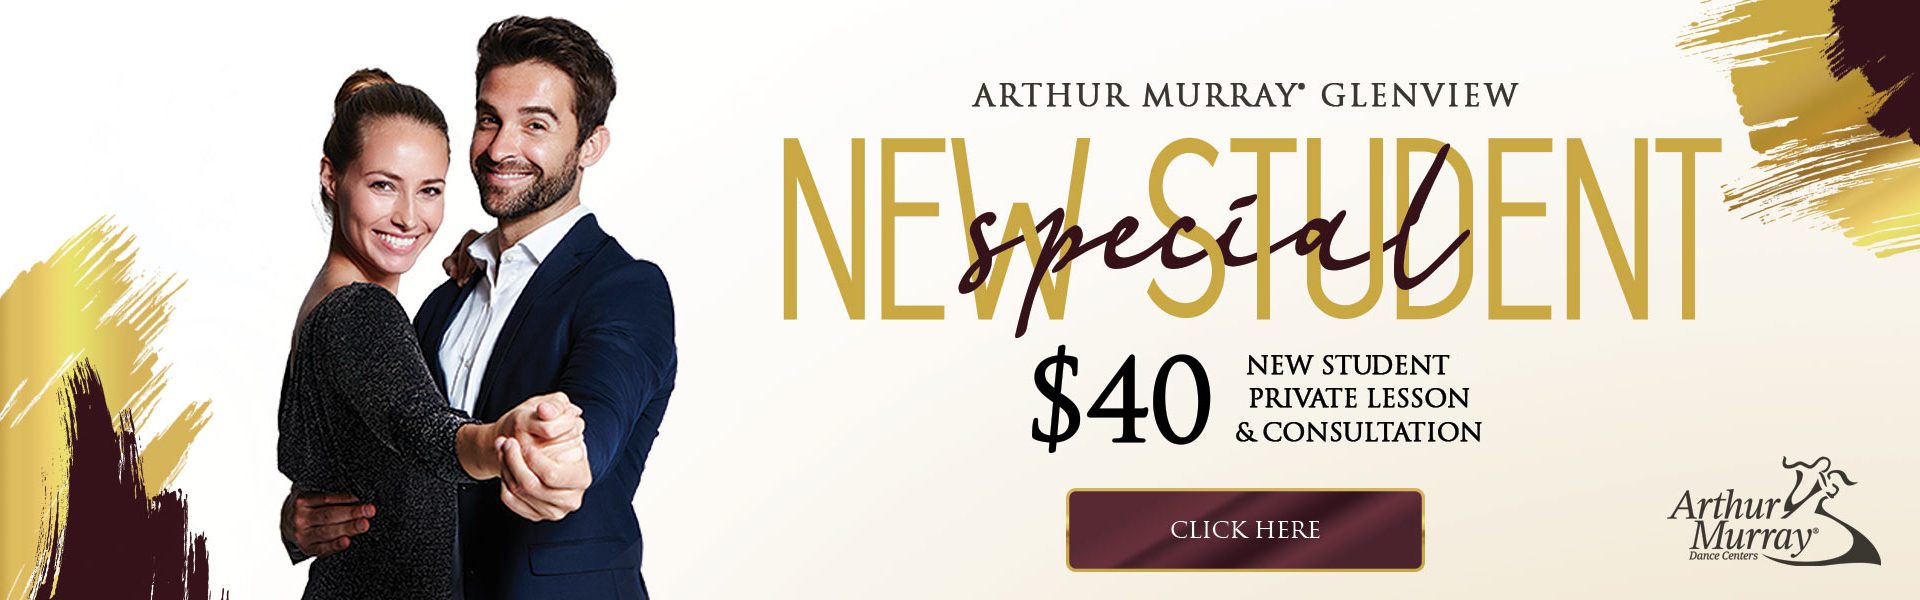 Arthur Murray Glenview New Student Offer